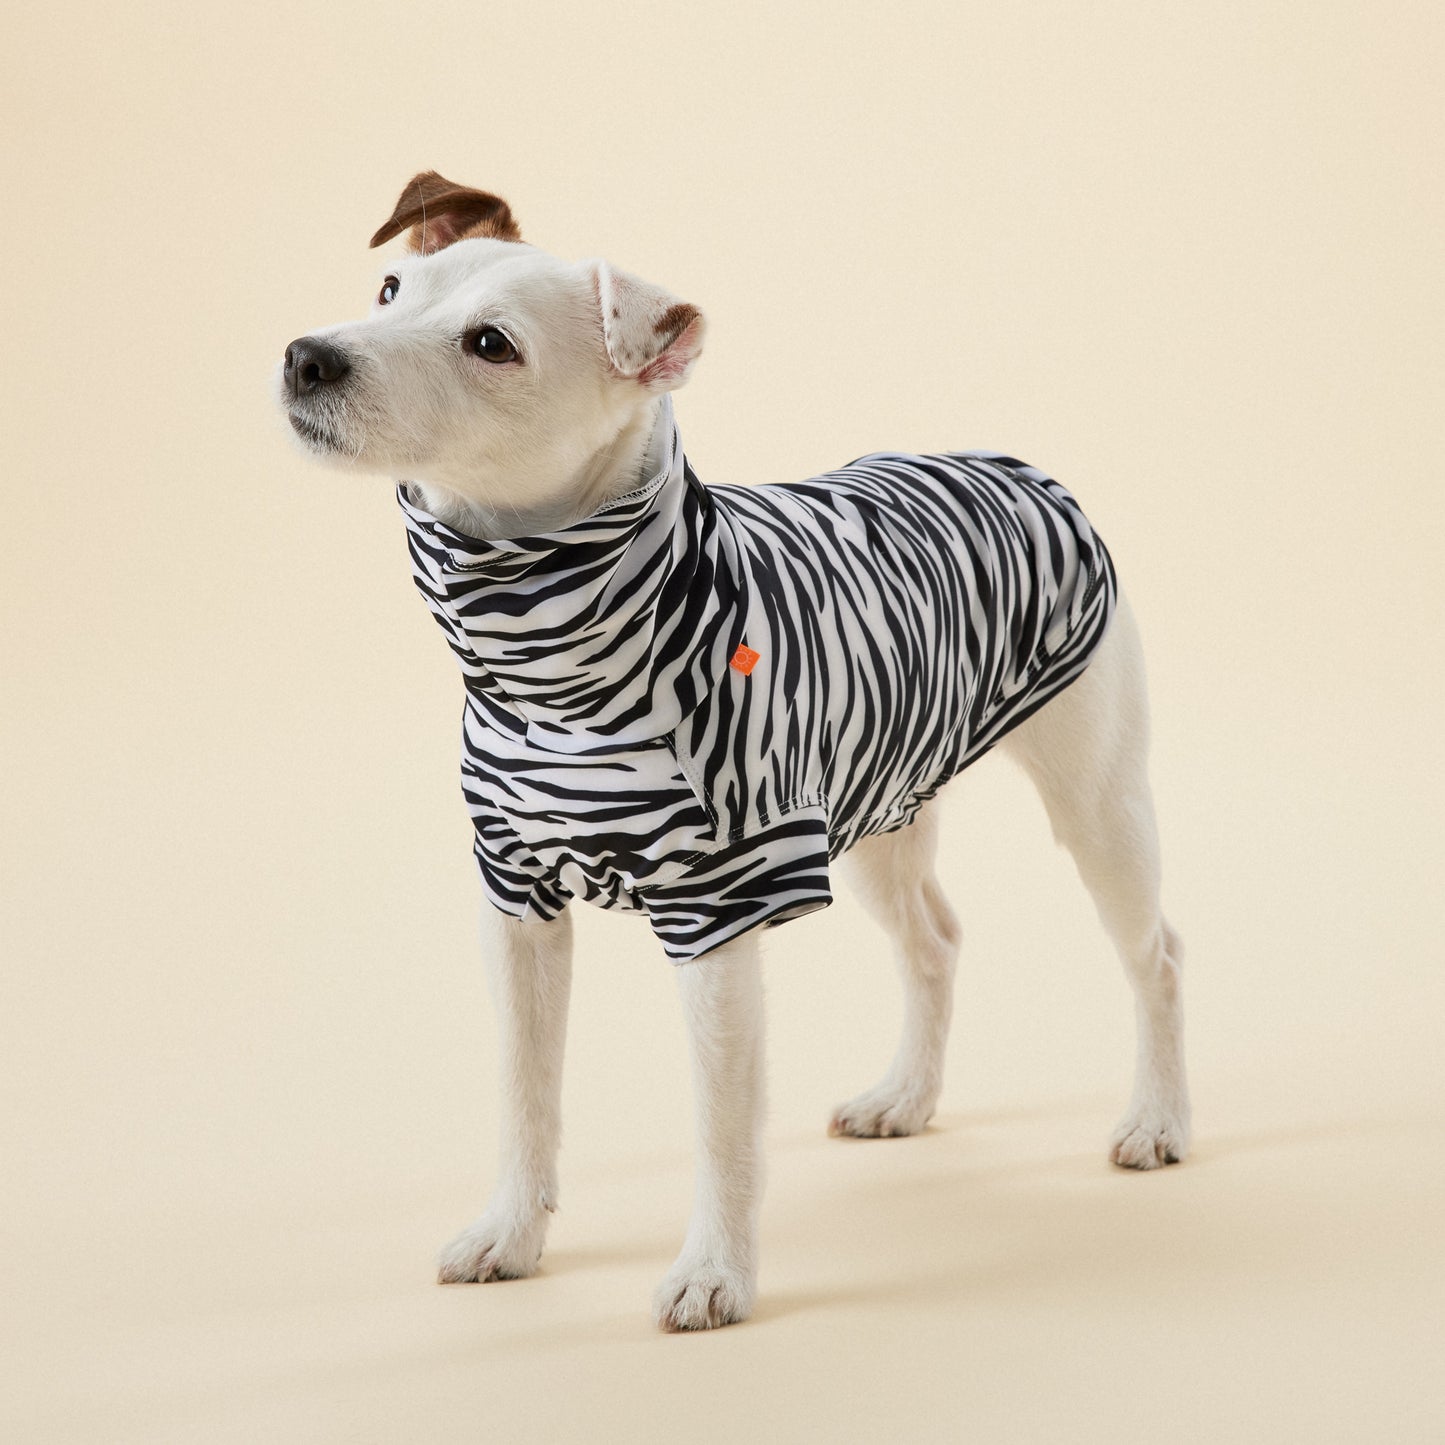 PAiKKA | UV- und Insektenschutz-Shirt | UV & Bug Shirt [Repeltec for Dogs] AKTiONSARTiKEL